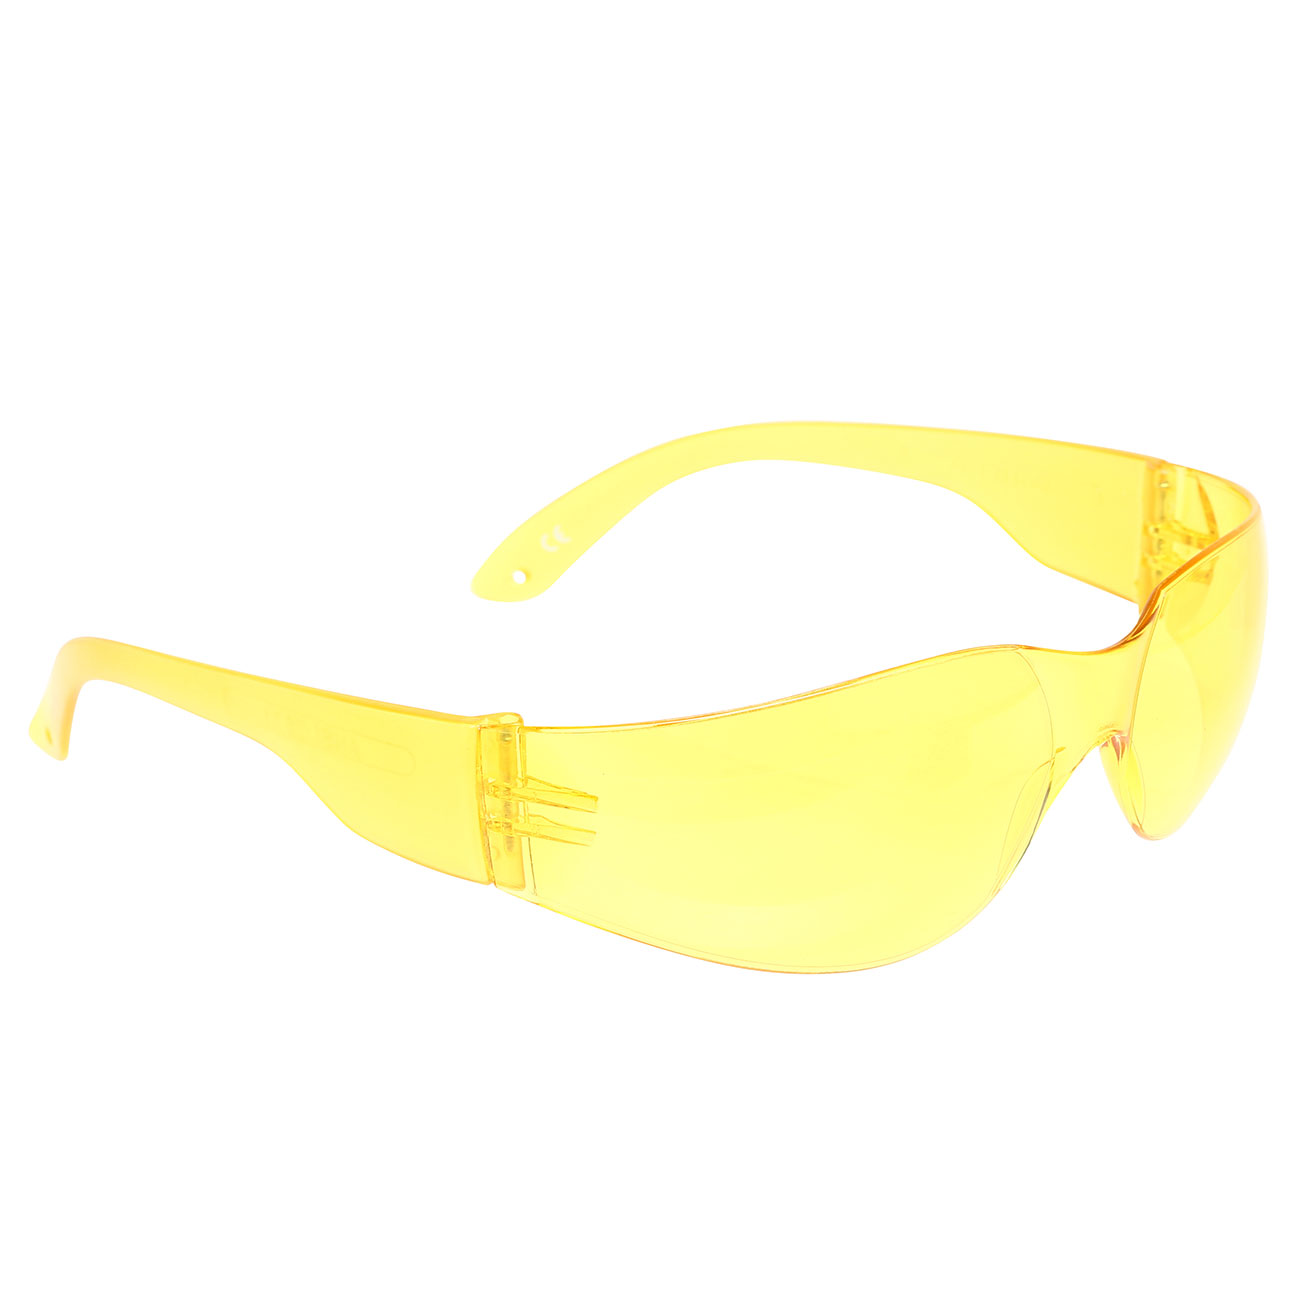 Nuprol Airsoft Protective Schutzbrille gelb Bild 1